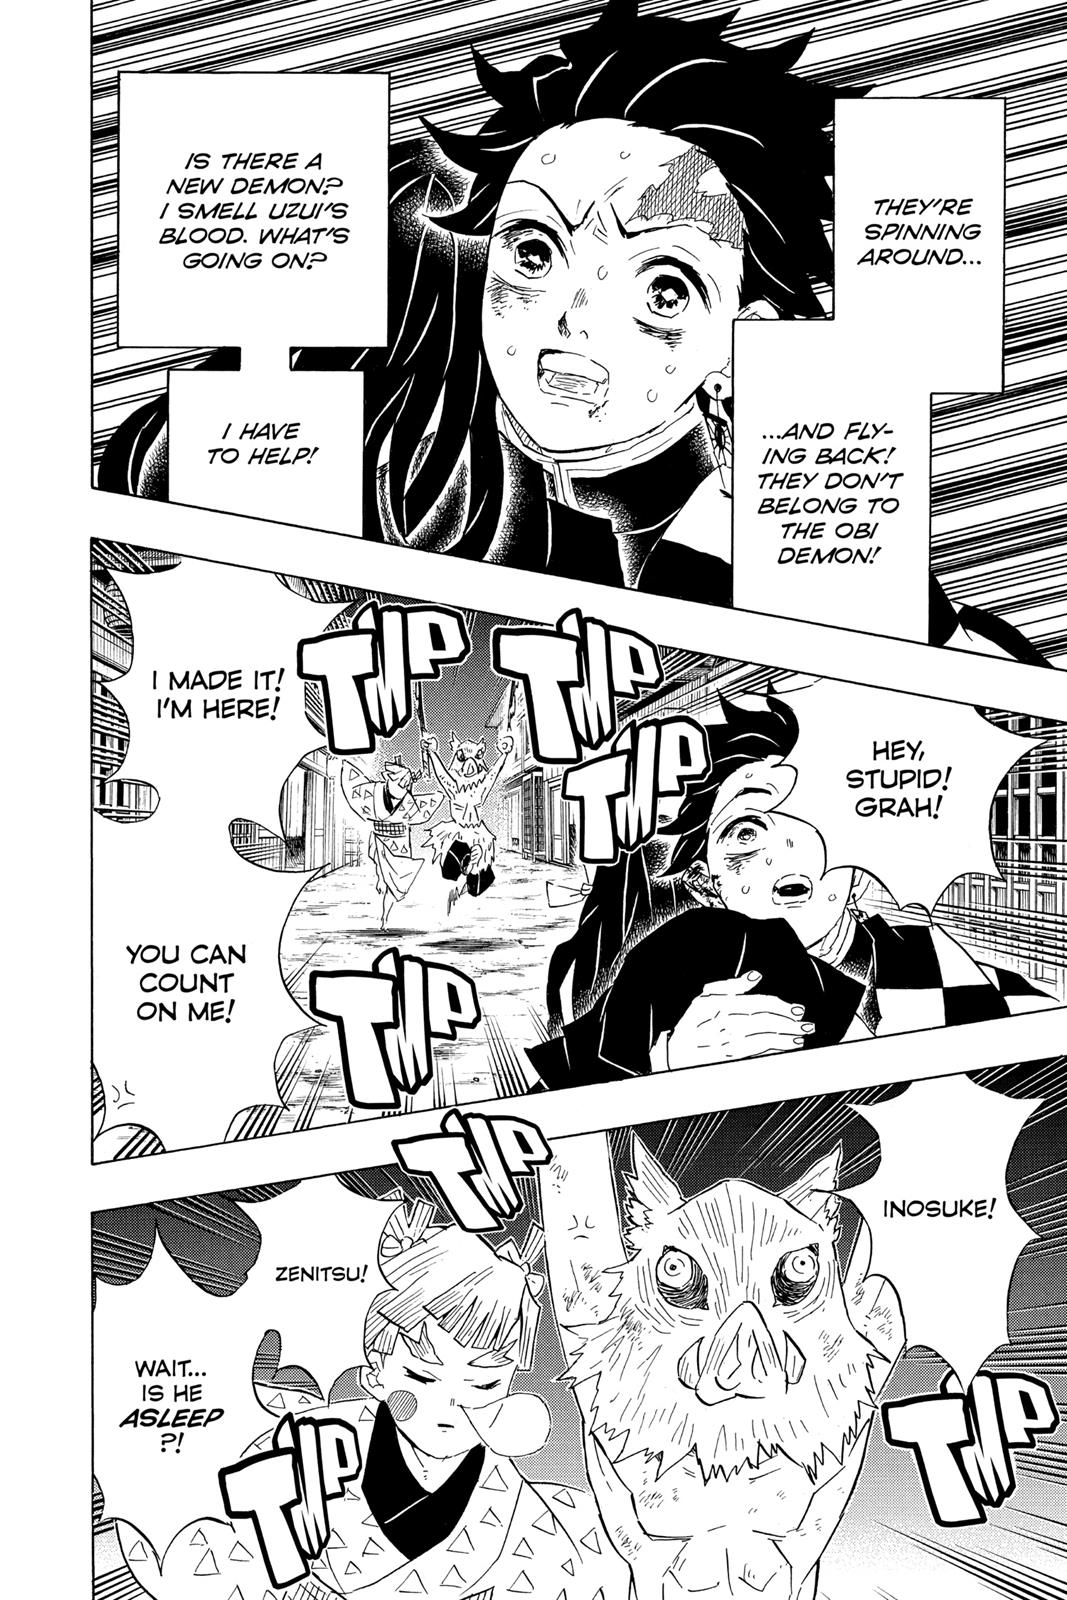 Demon Slayer Manga Manga Chapter - 86 - image 6